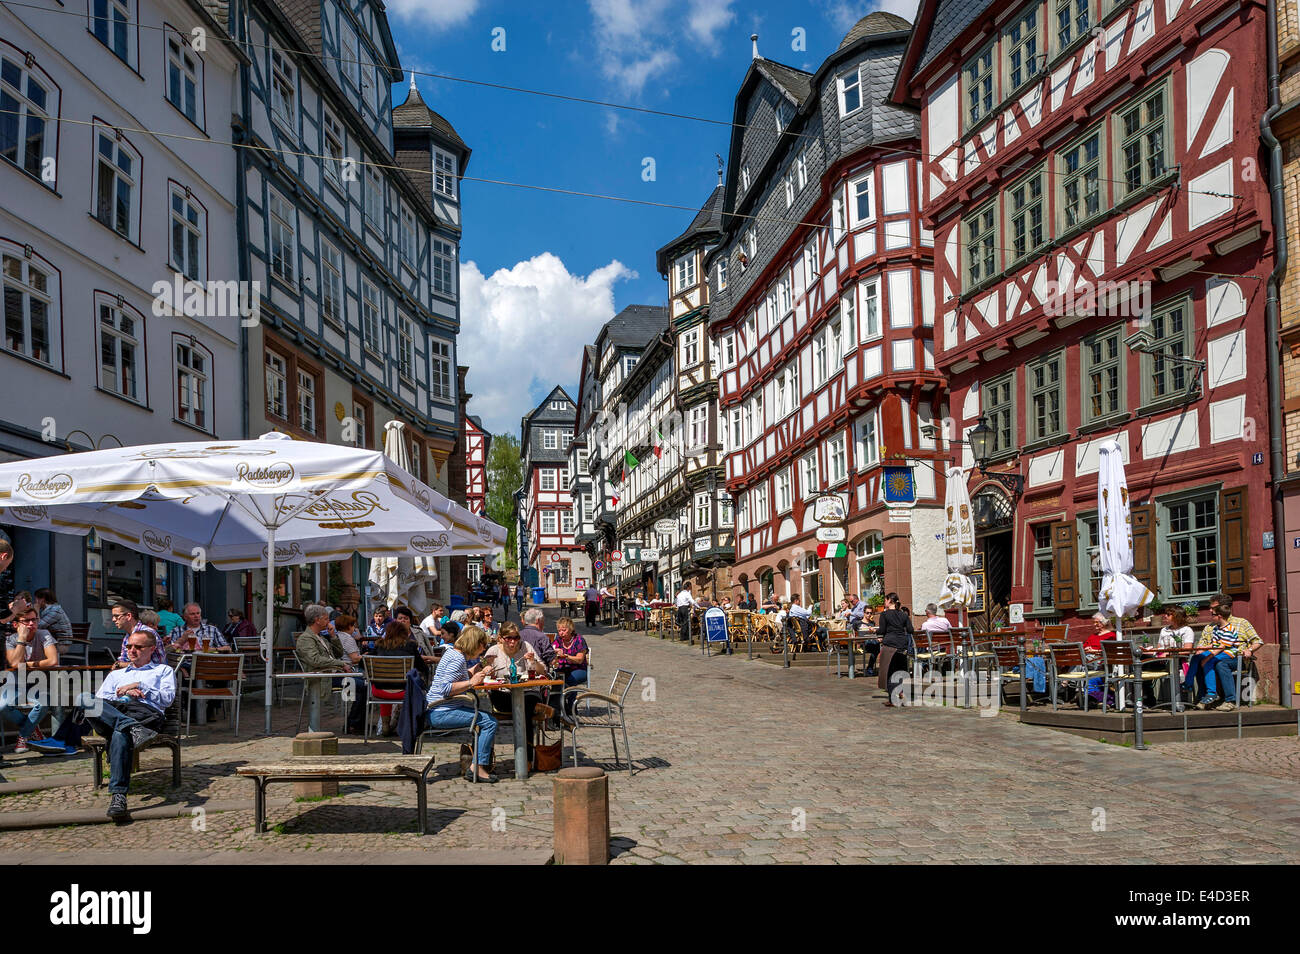 Scène de rue, maisons à colombages sur la place du marché, centre historique, Marburg, Hesse, Allemagne Banque D'Images